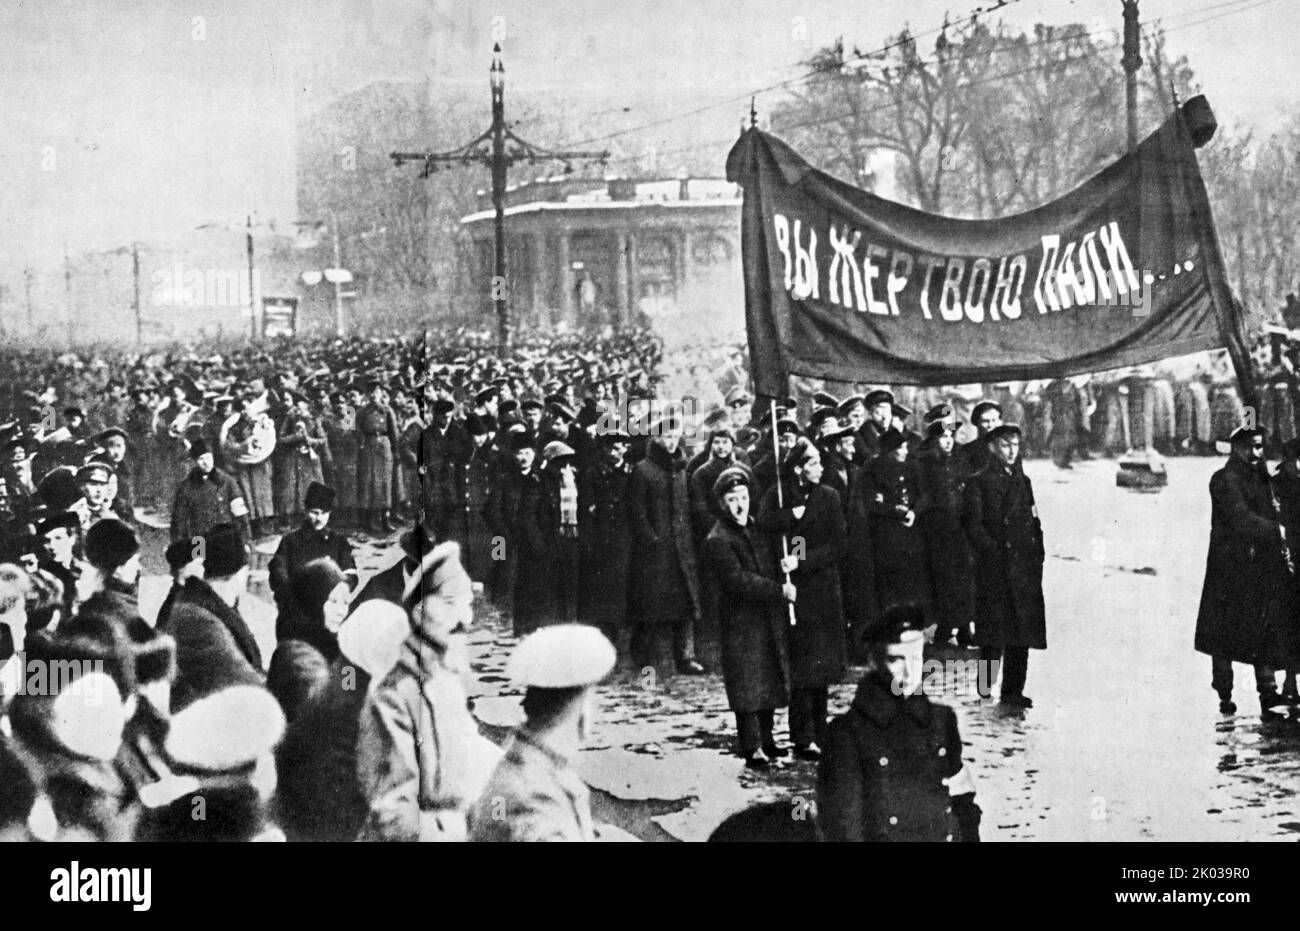 Les funérailles des révolutionnaires qui sont morts dans les jours du renversement de l'autocratie. Petrograd, mars 1917. Banque D'Images